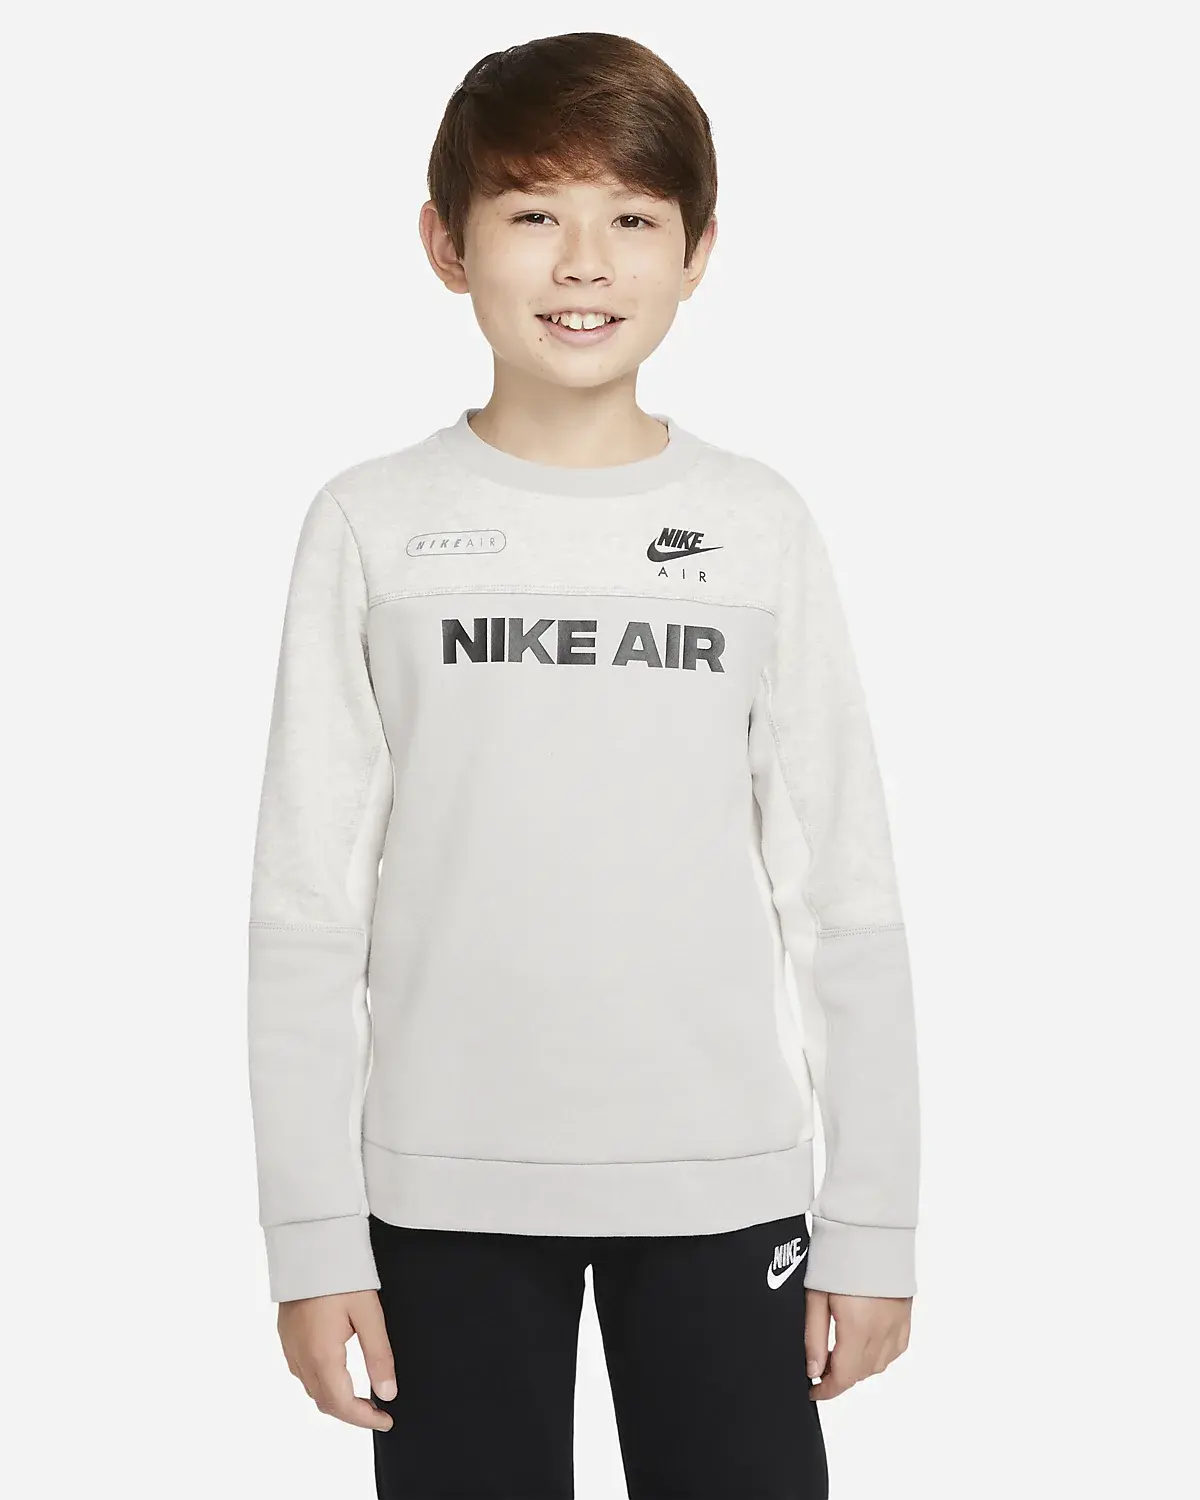 Nike Air. 1